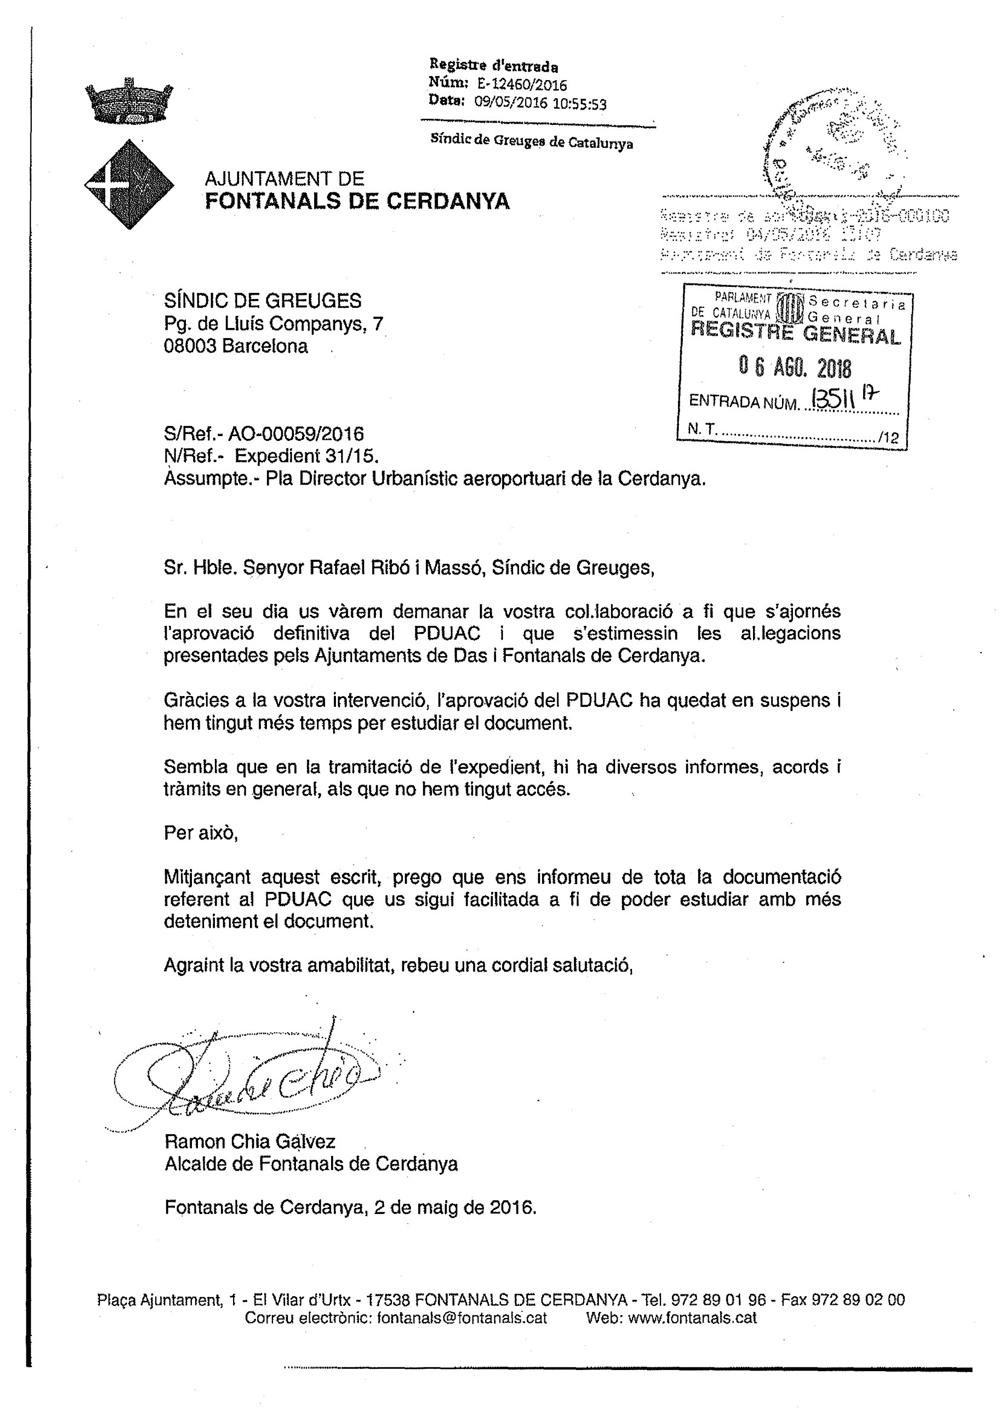 Carta del alcalde de Fontanals agradeciendo al Síndic de Greuges su intervención / CG